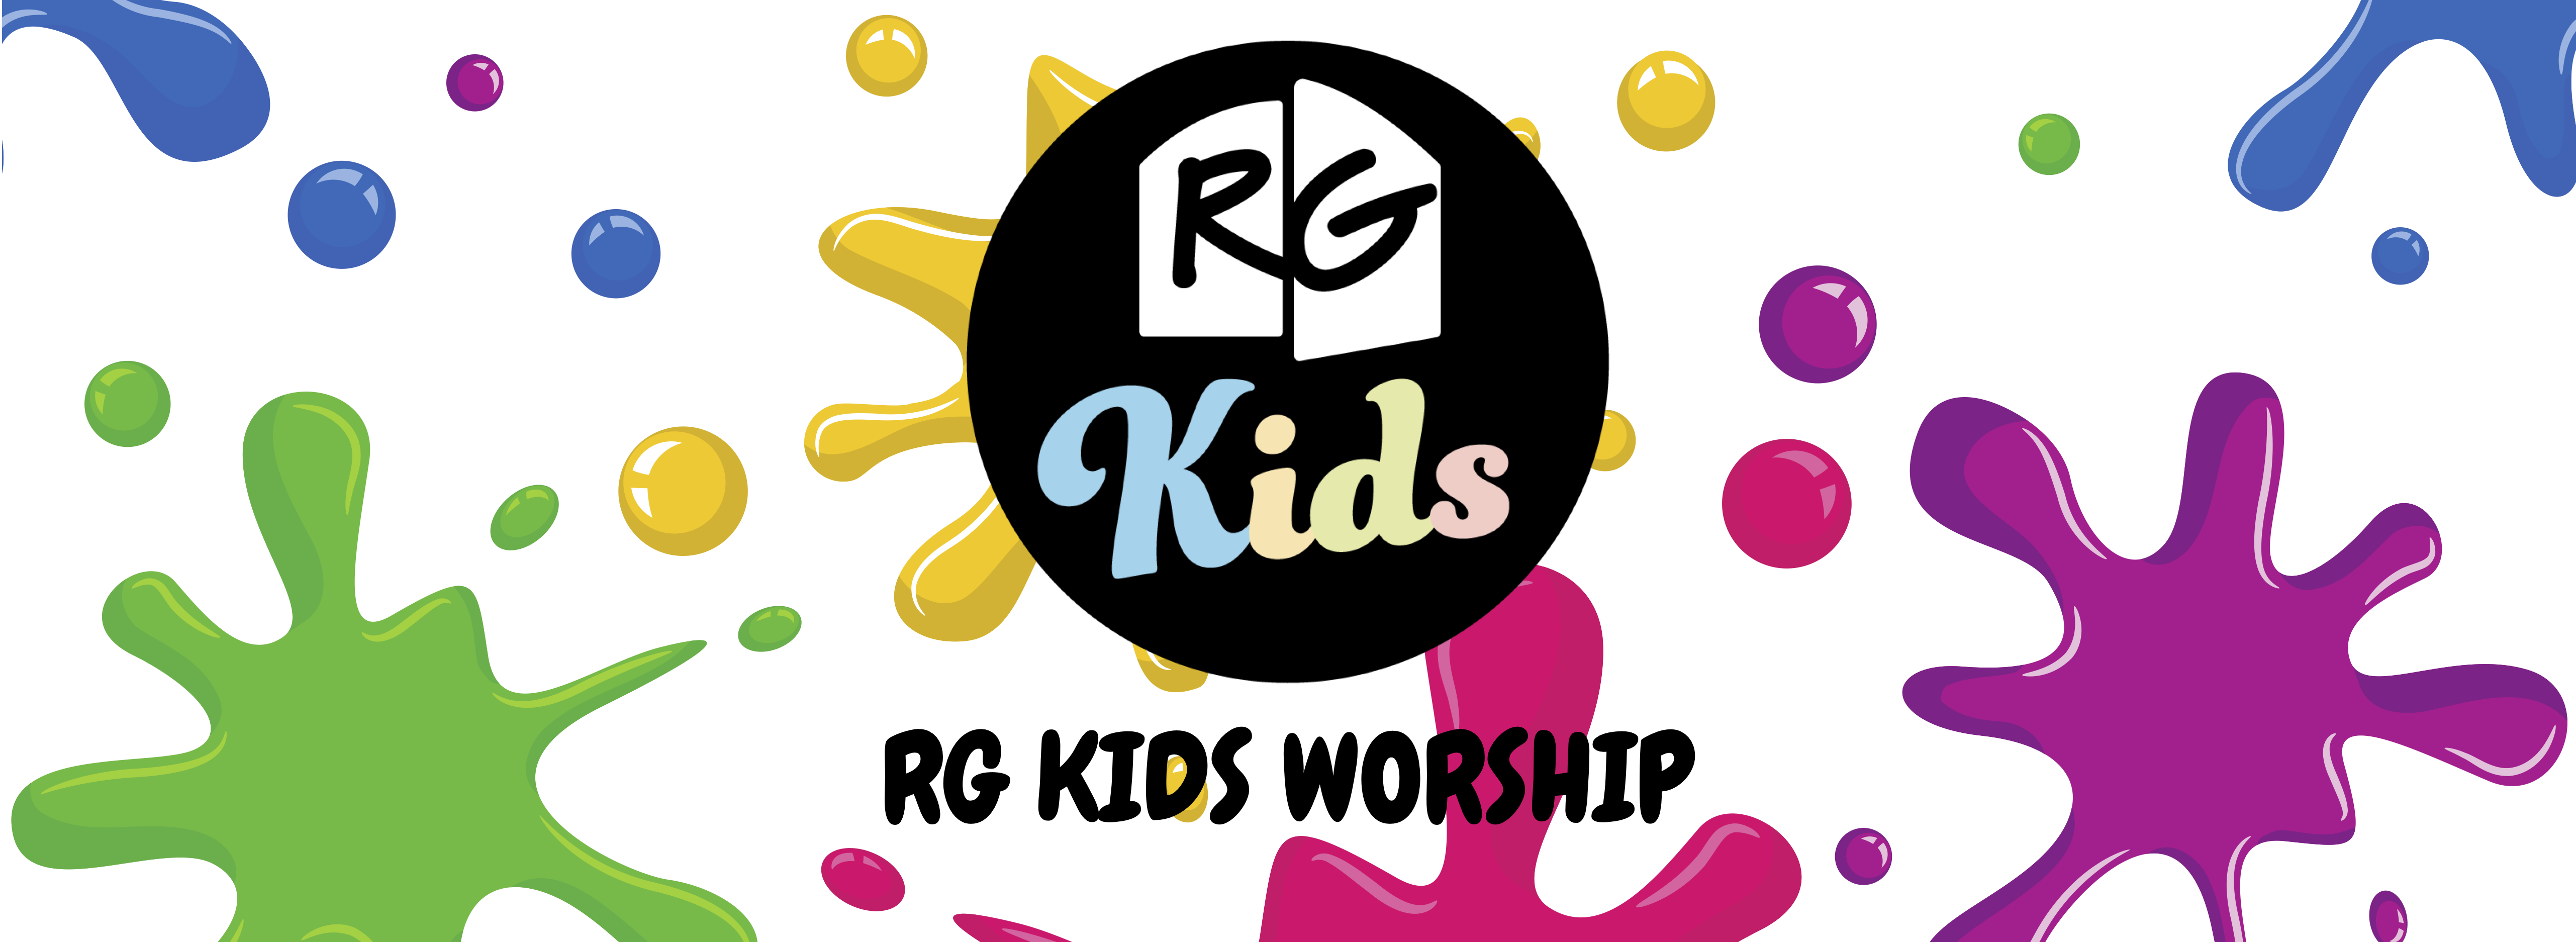 Kids Worship banner